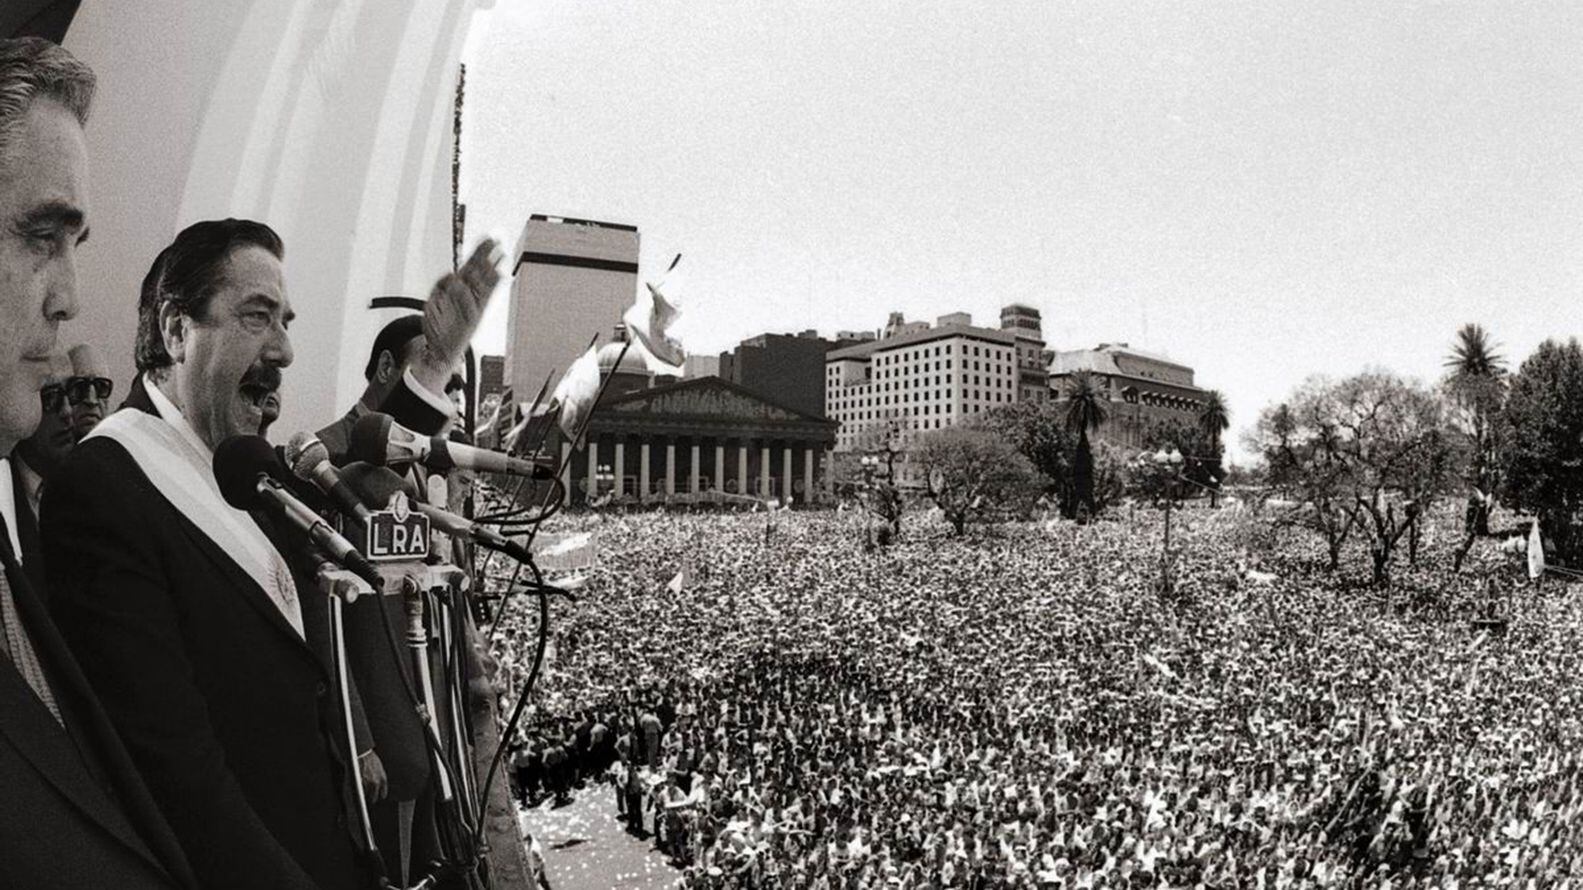 Foto mítica. El presidente Raúl Alfonsín habla desde el Cabildo a la multitud reunida tras su asunción. Era 10 de diciembre de 1983. (foto Víctor Bügge)